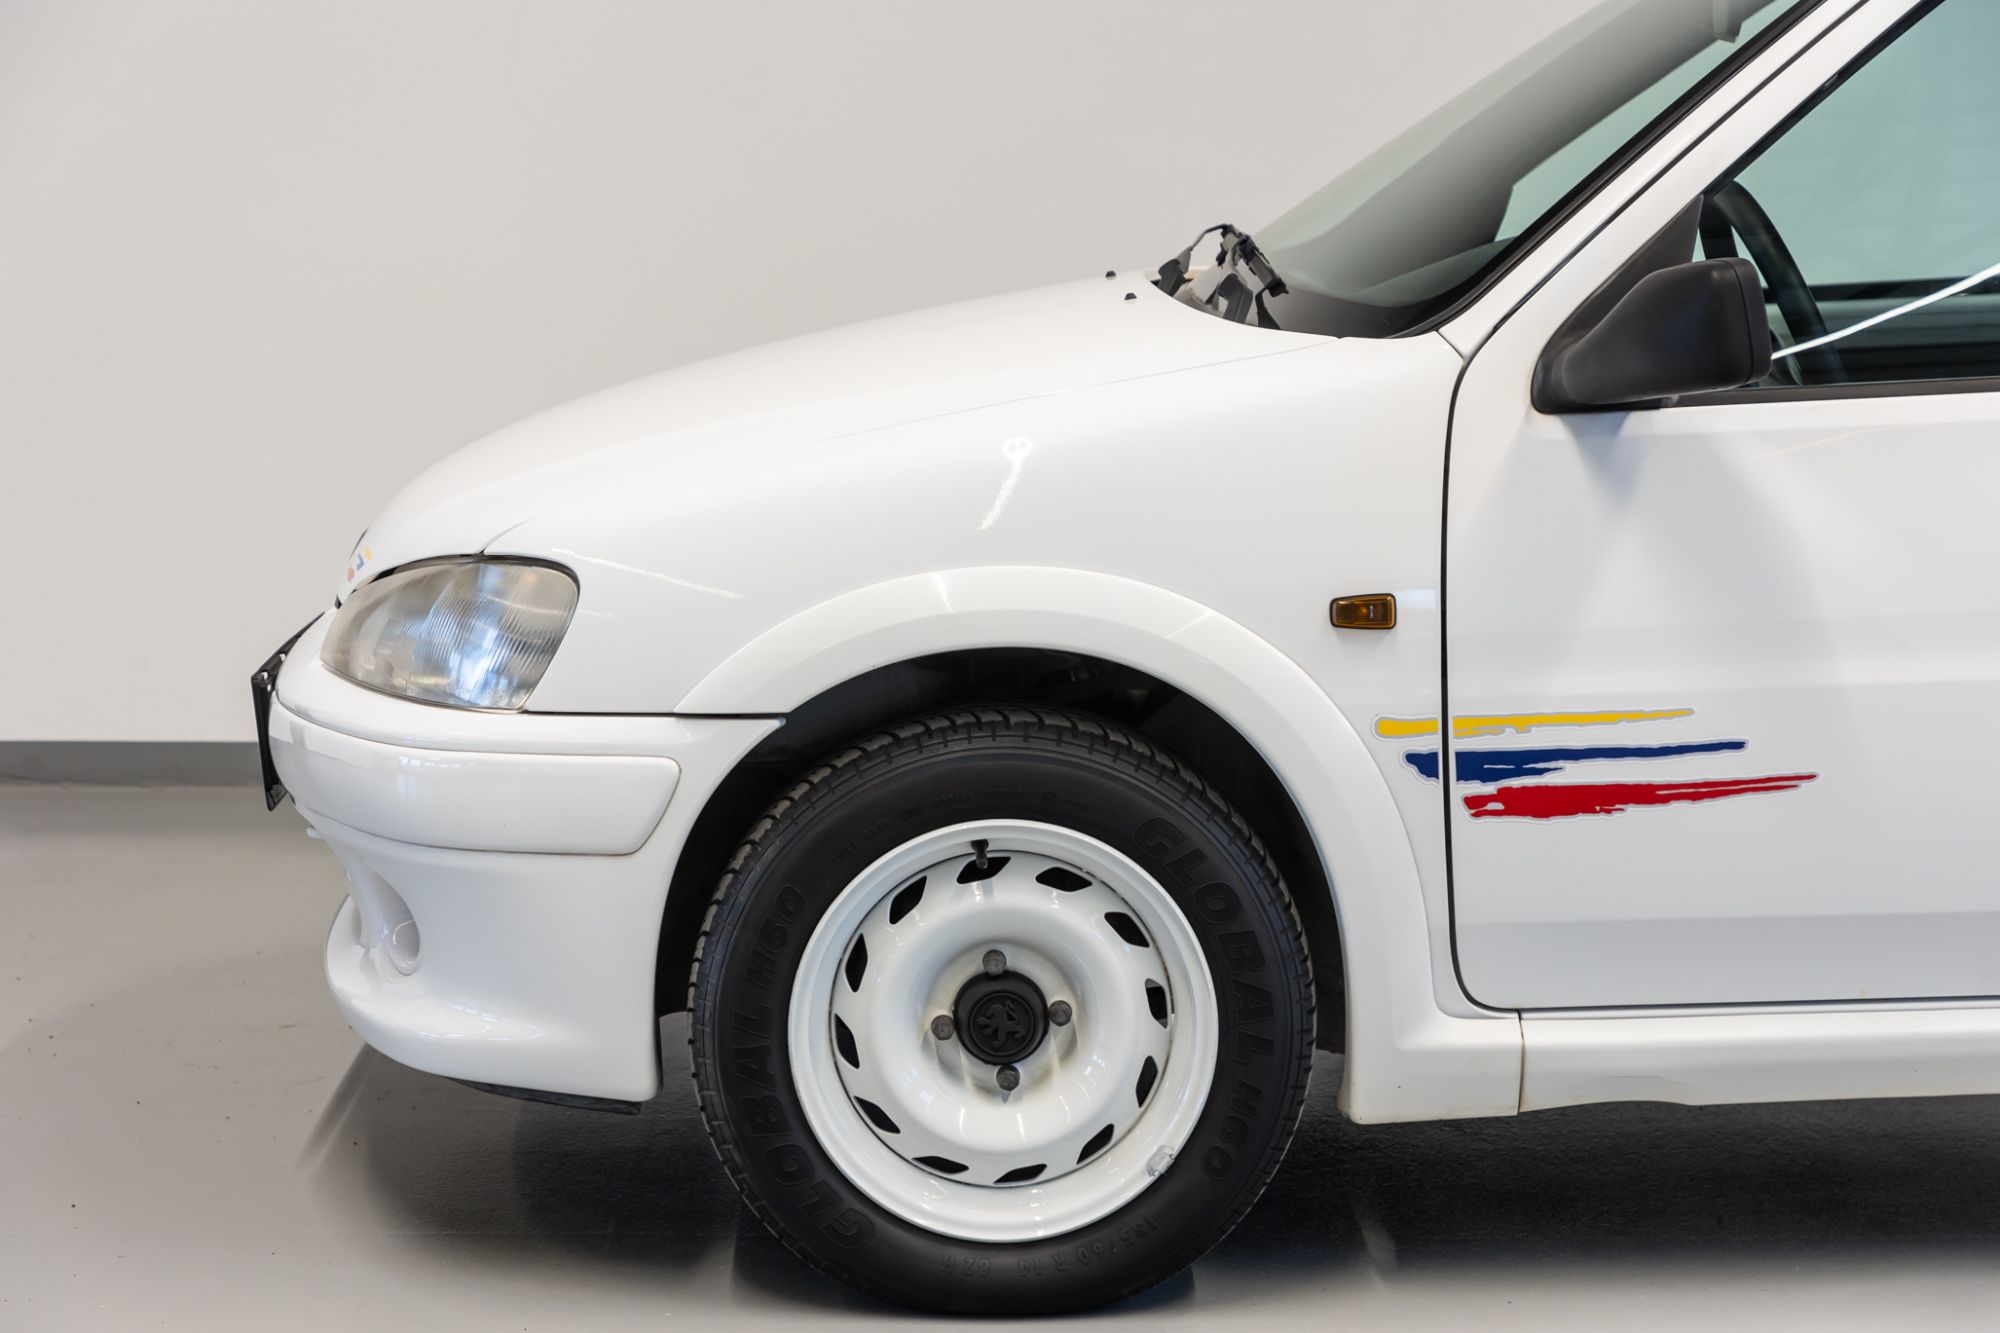 Peugeot 106 Rallye Ph2, 89500kms d'origine – Voiture vendue – CforCar